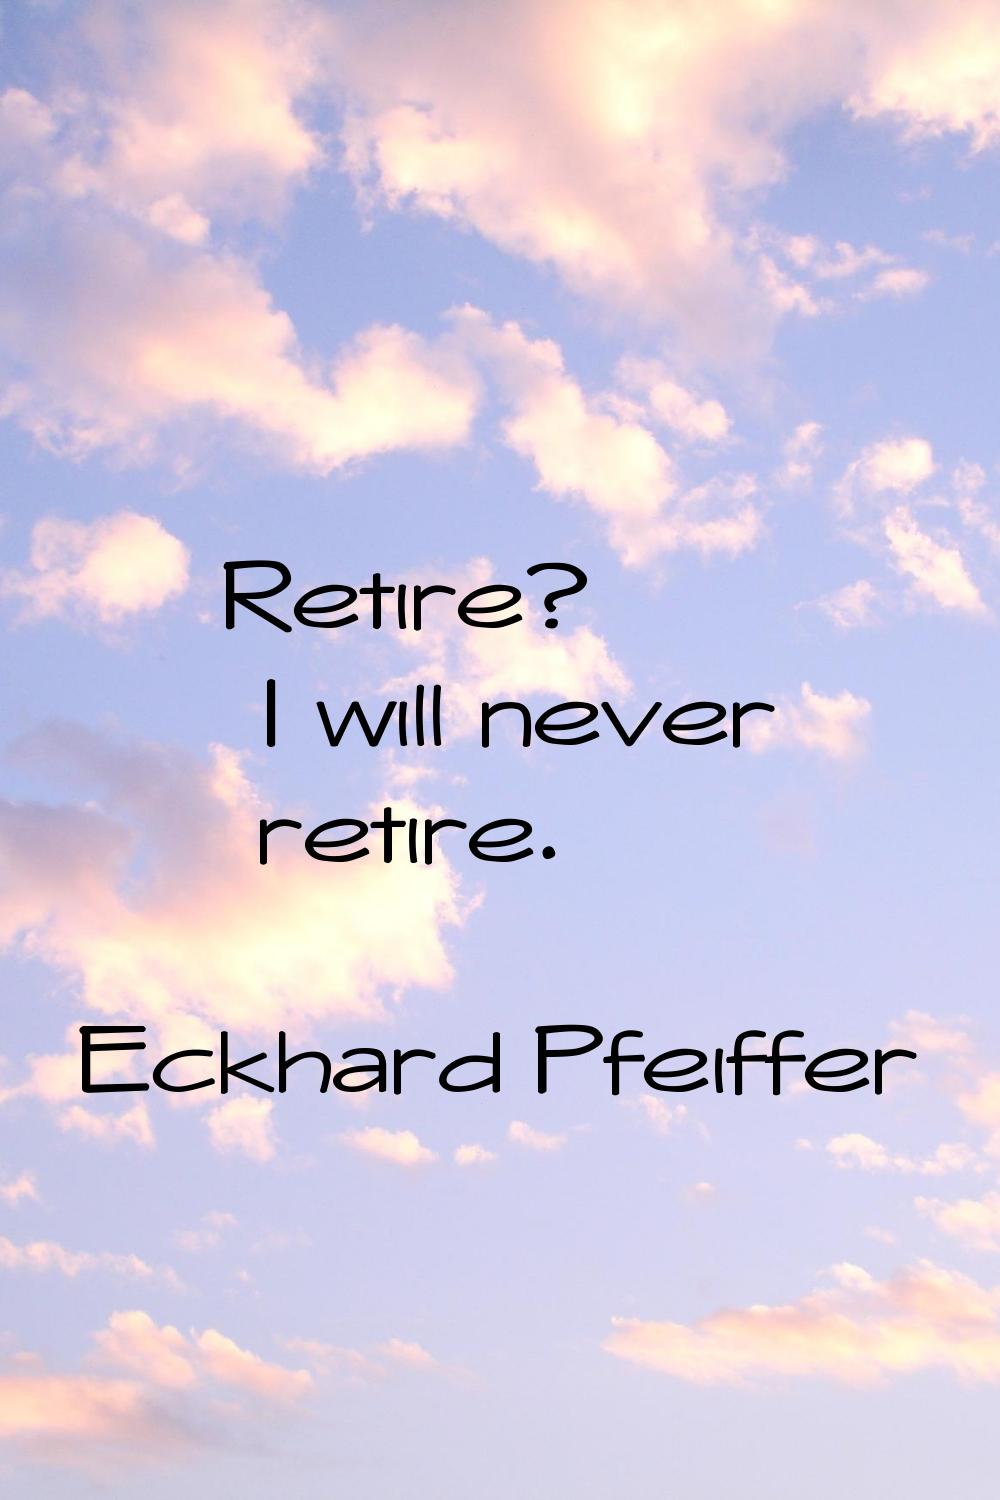 Retire? I will never retire.